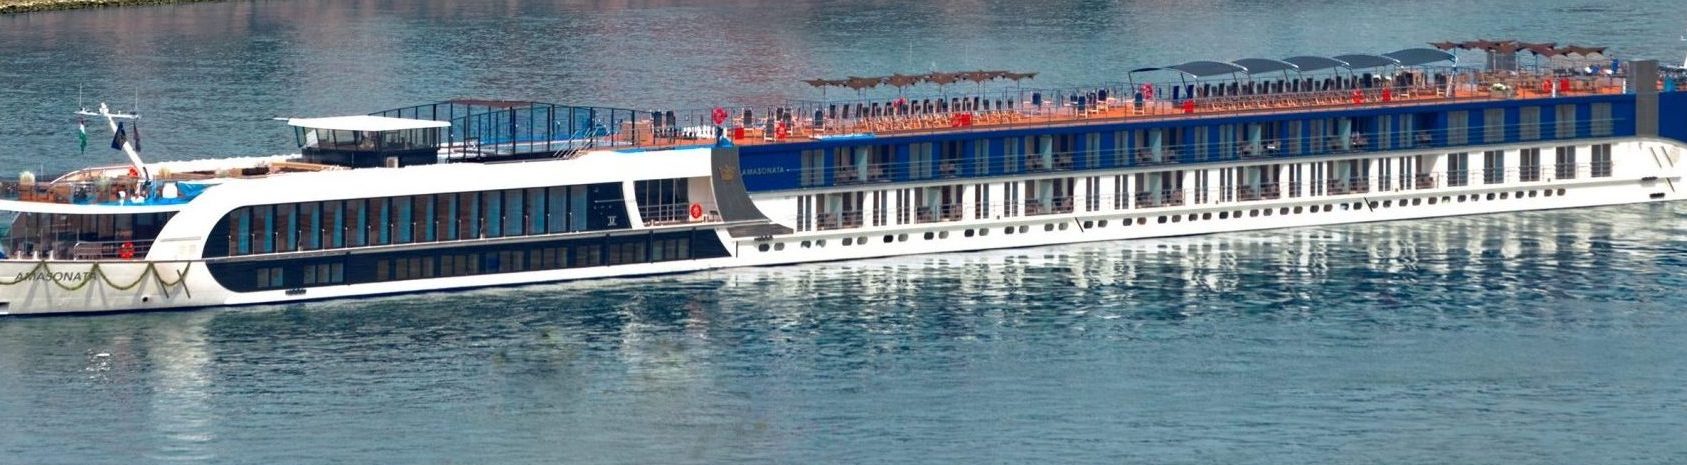 amasonata river cruise